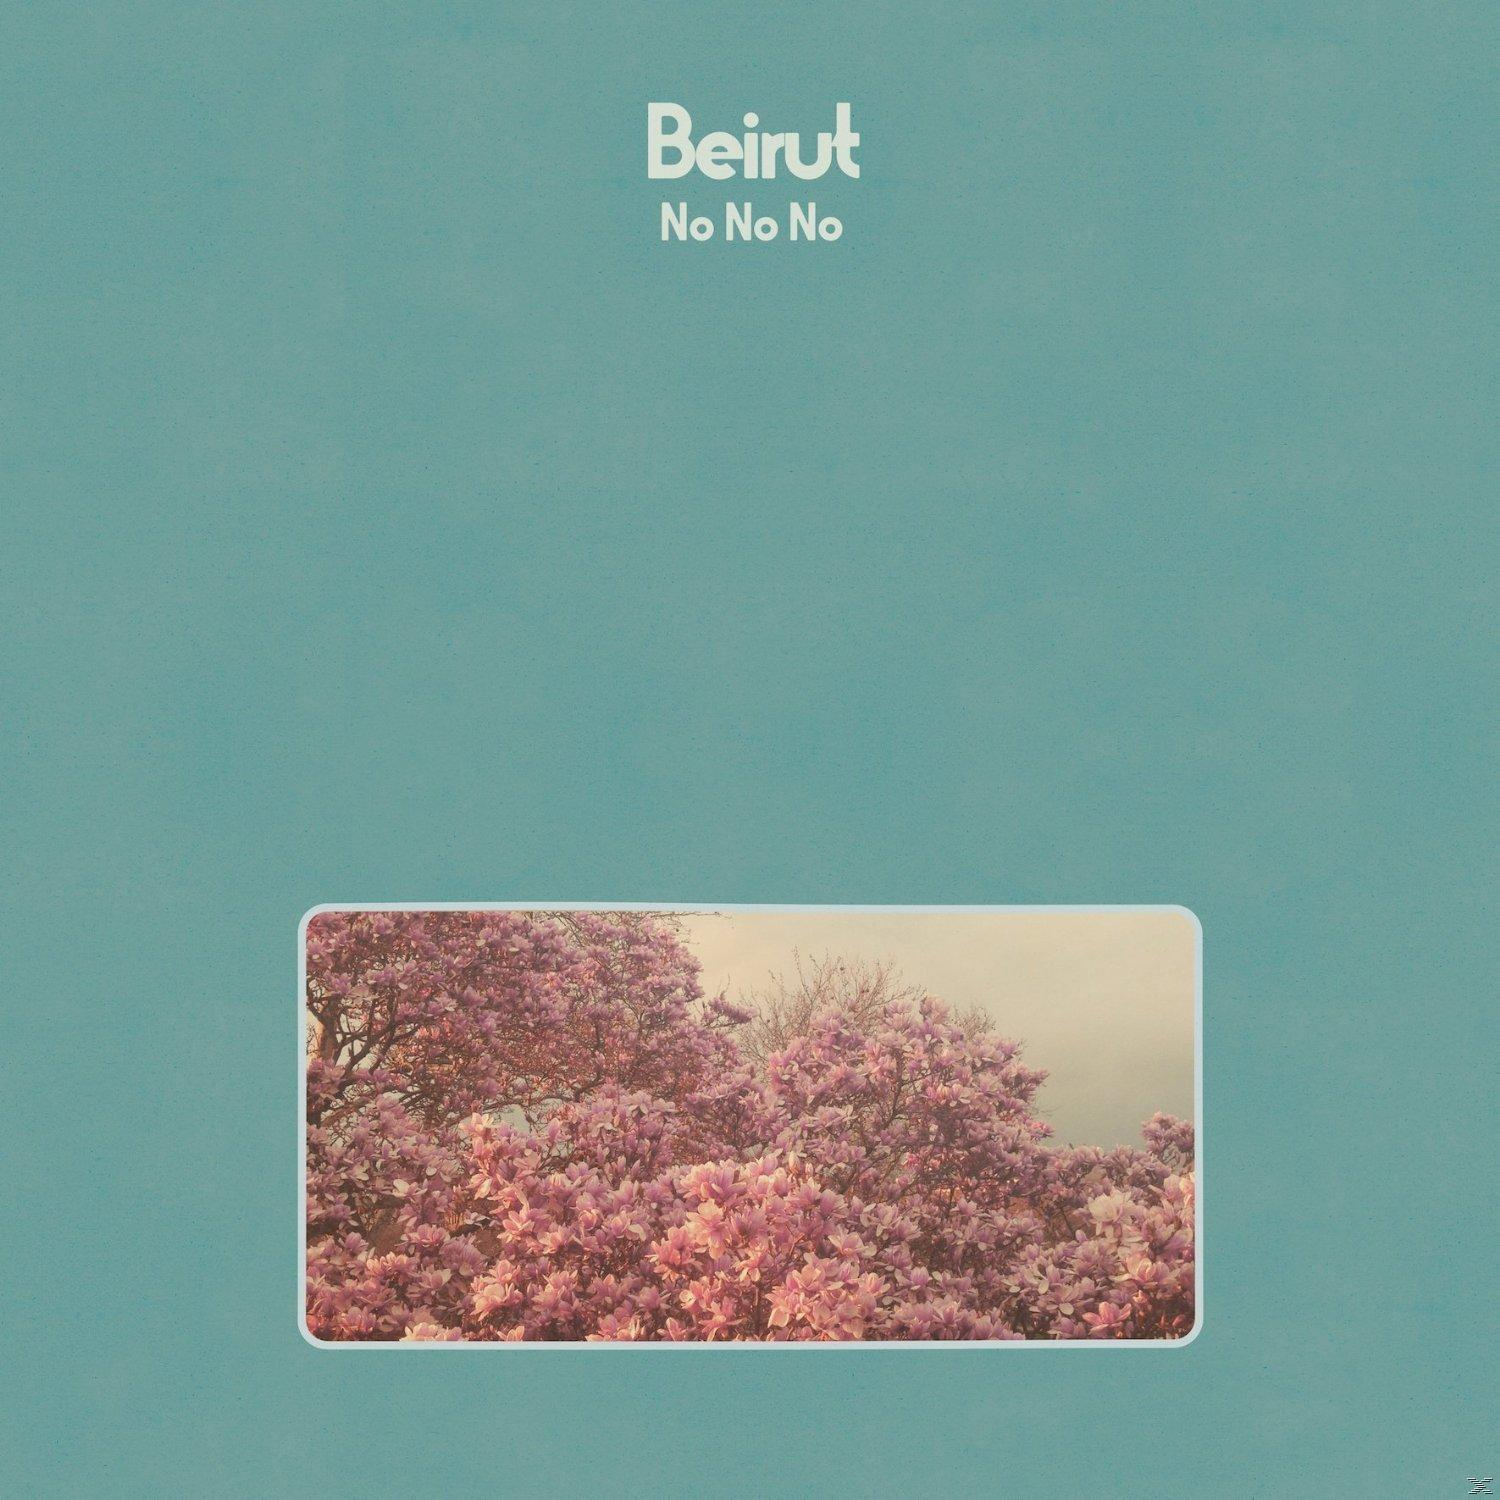 Beirut - Download) (LP No No - + No